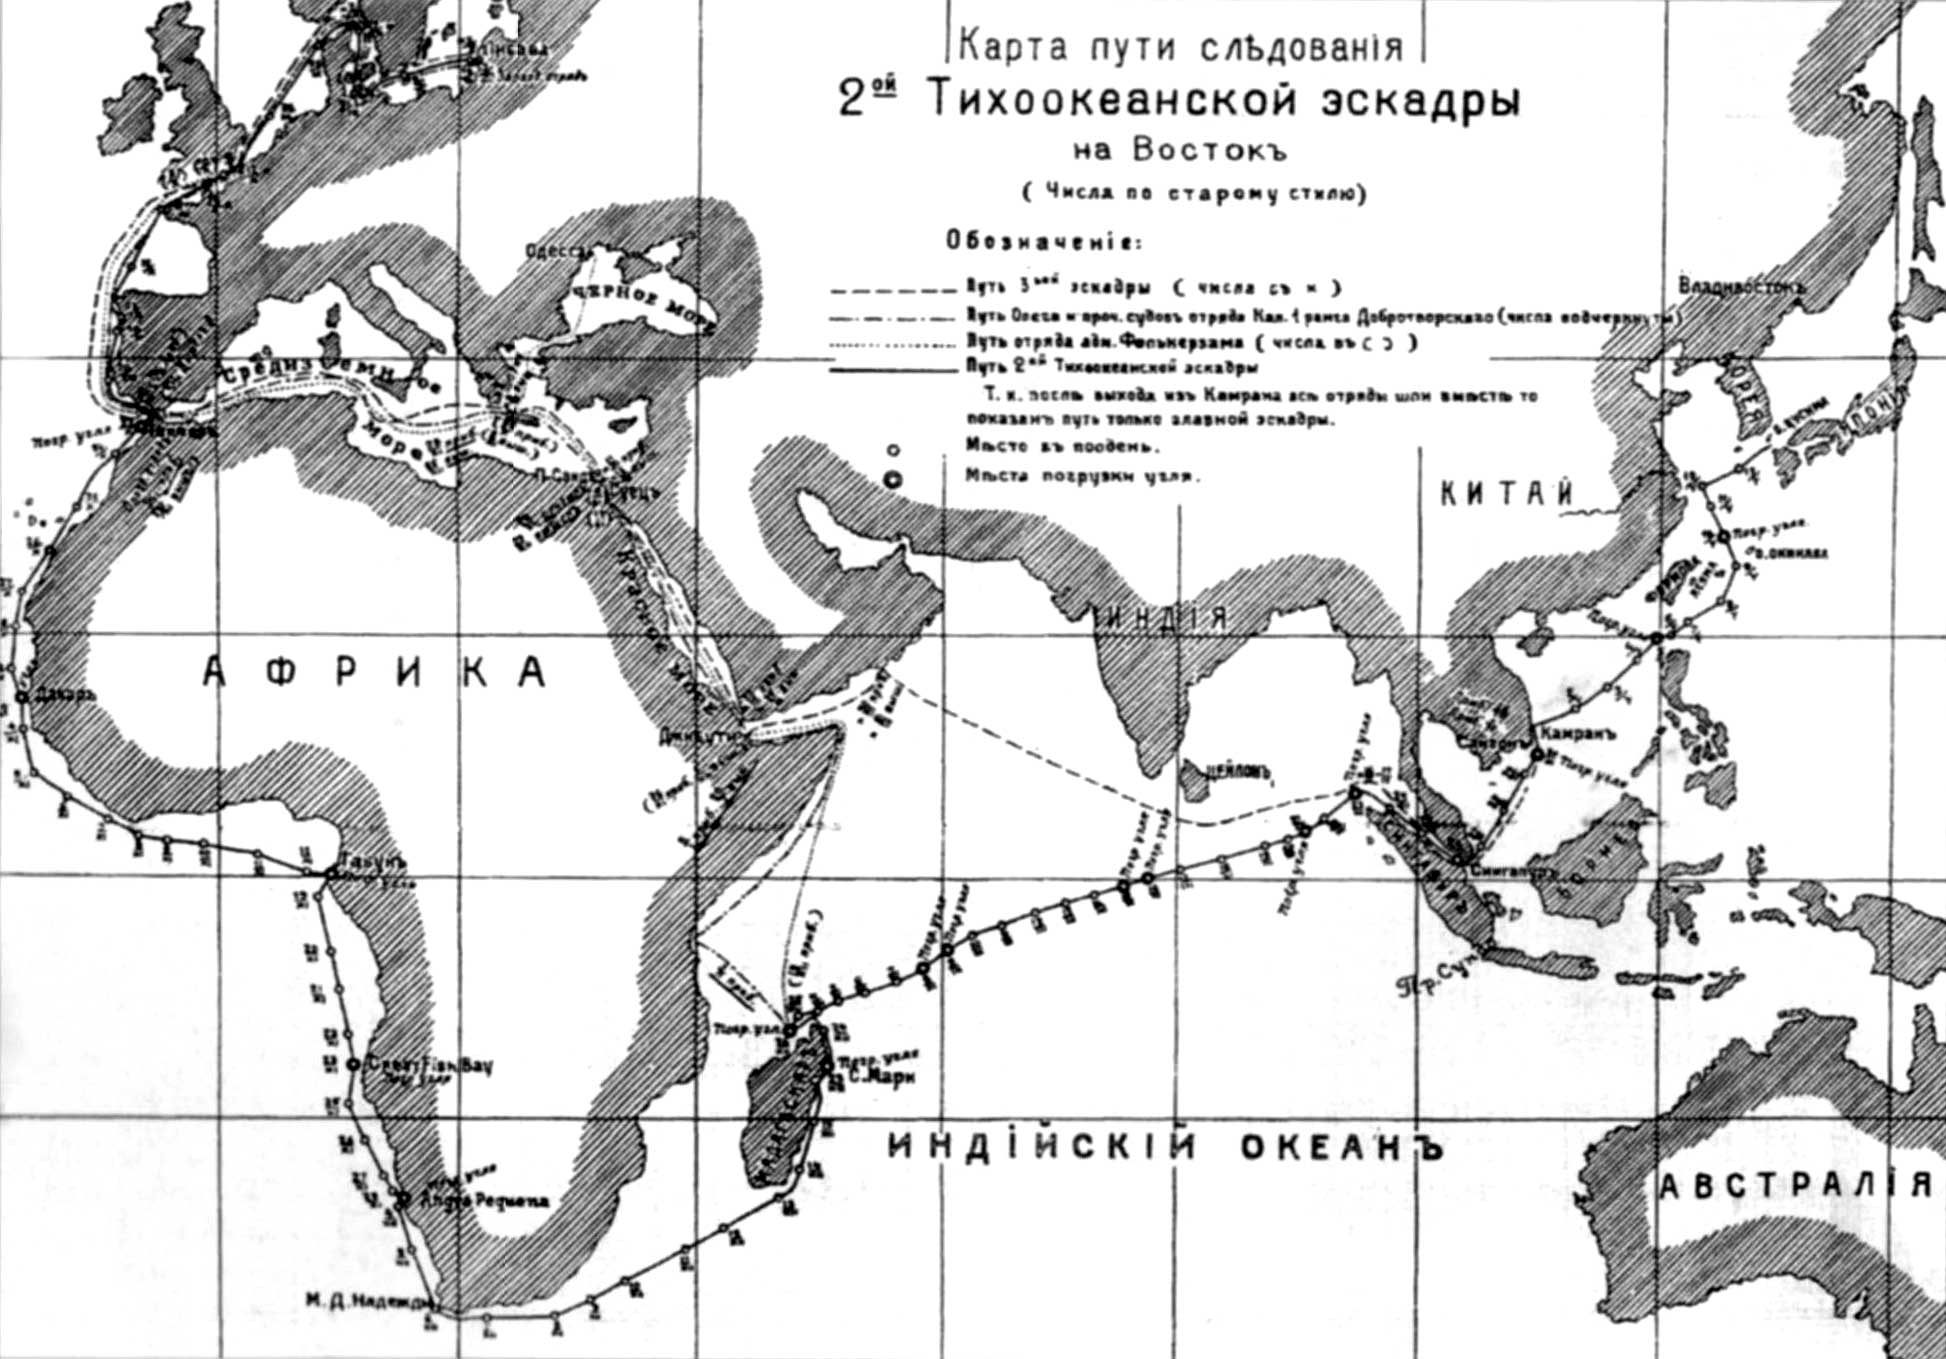 2 и 3 эскадры. Поход 2-й Тихоокеанской эскадры (1904—1905). Поход 2-й Тихоокеанской эскадры. Путь 2 Тихоокеанской эскадры карта.